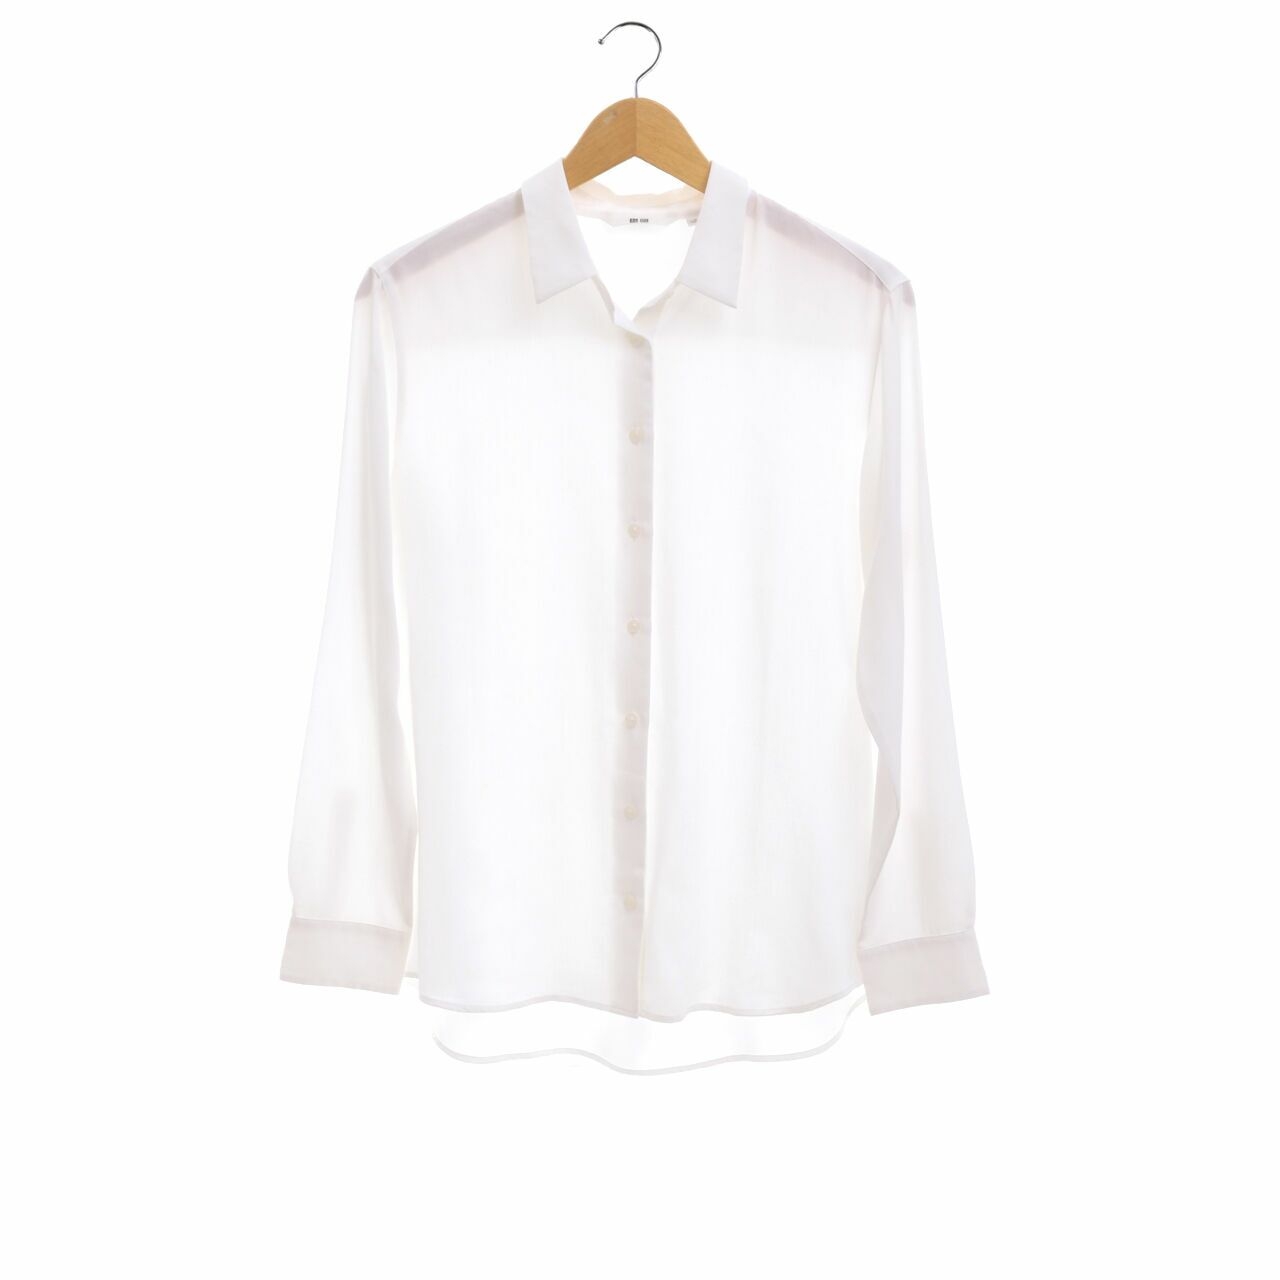 UNIQLO White Long Sleeve Shirt